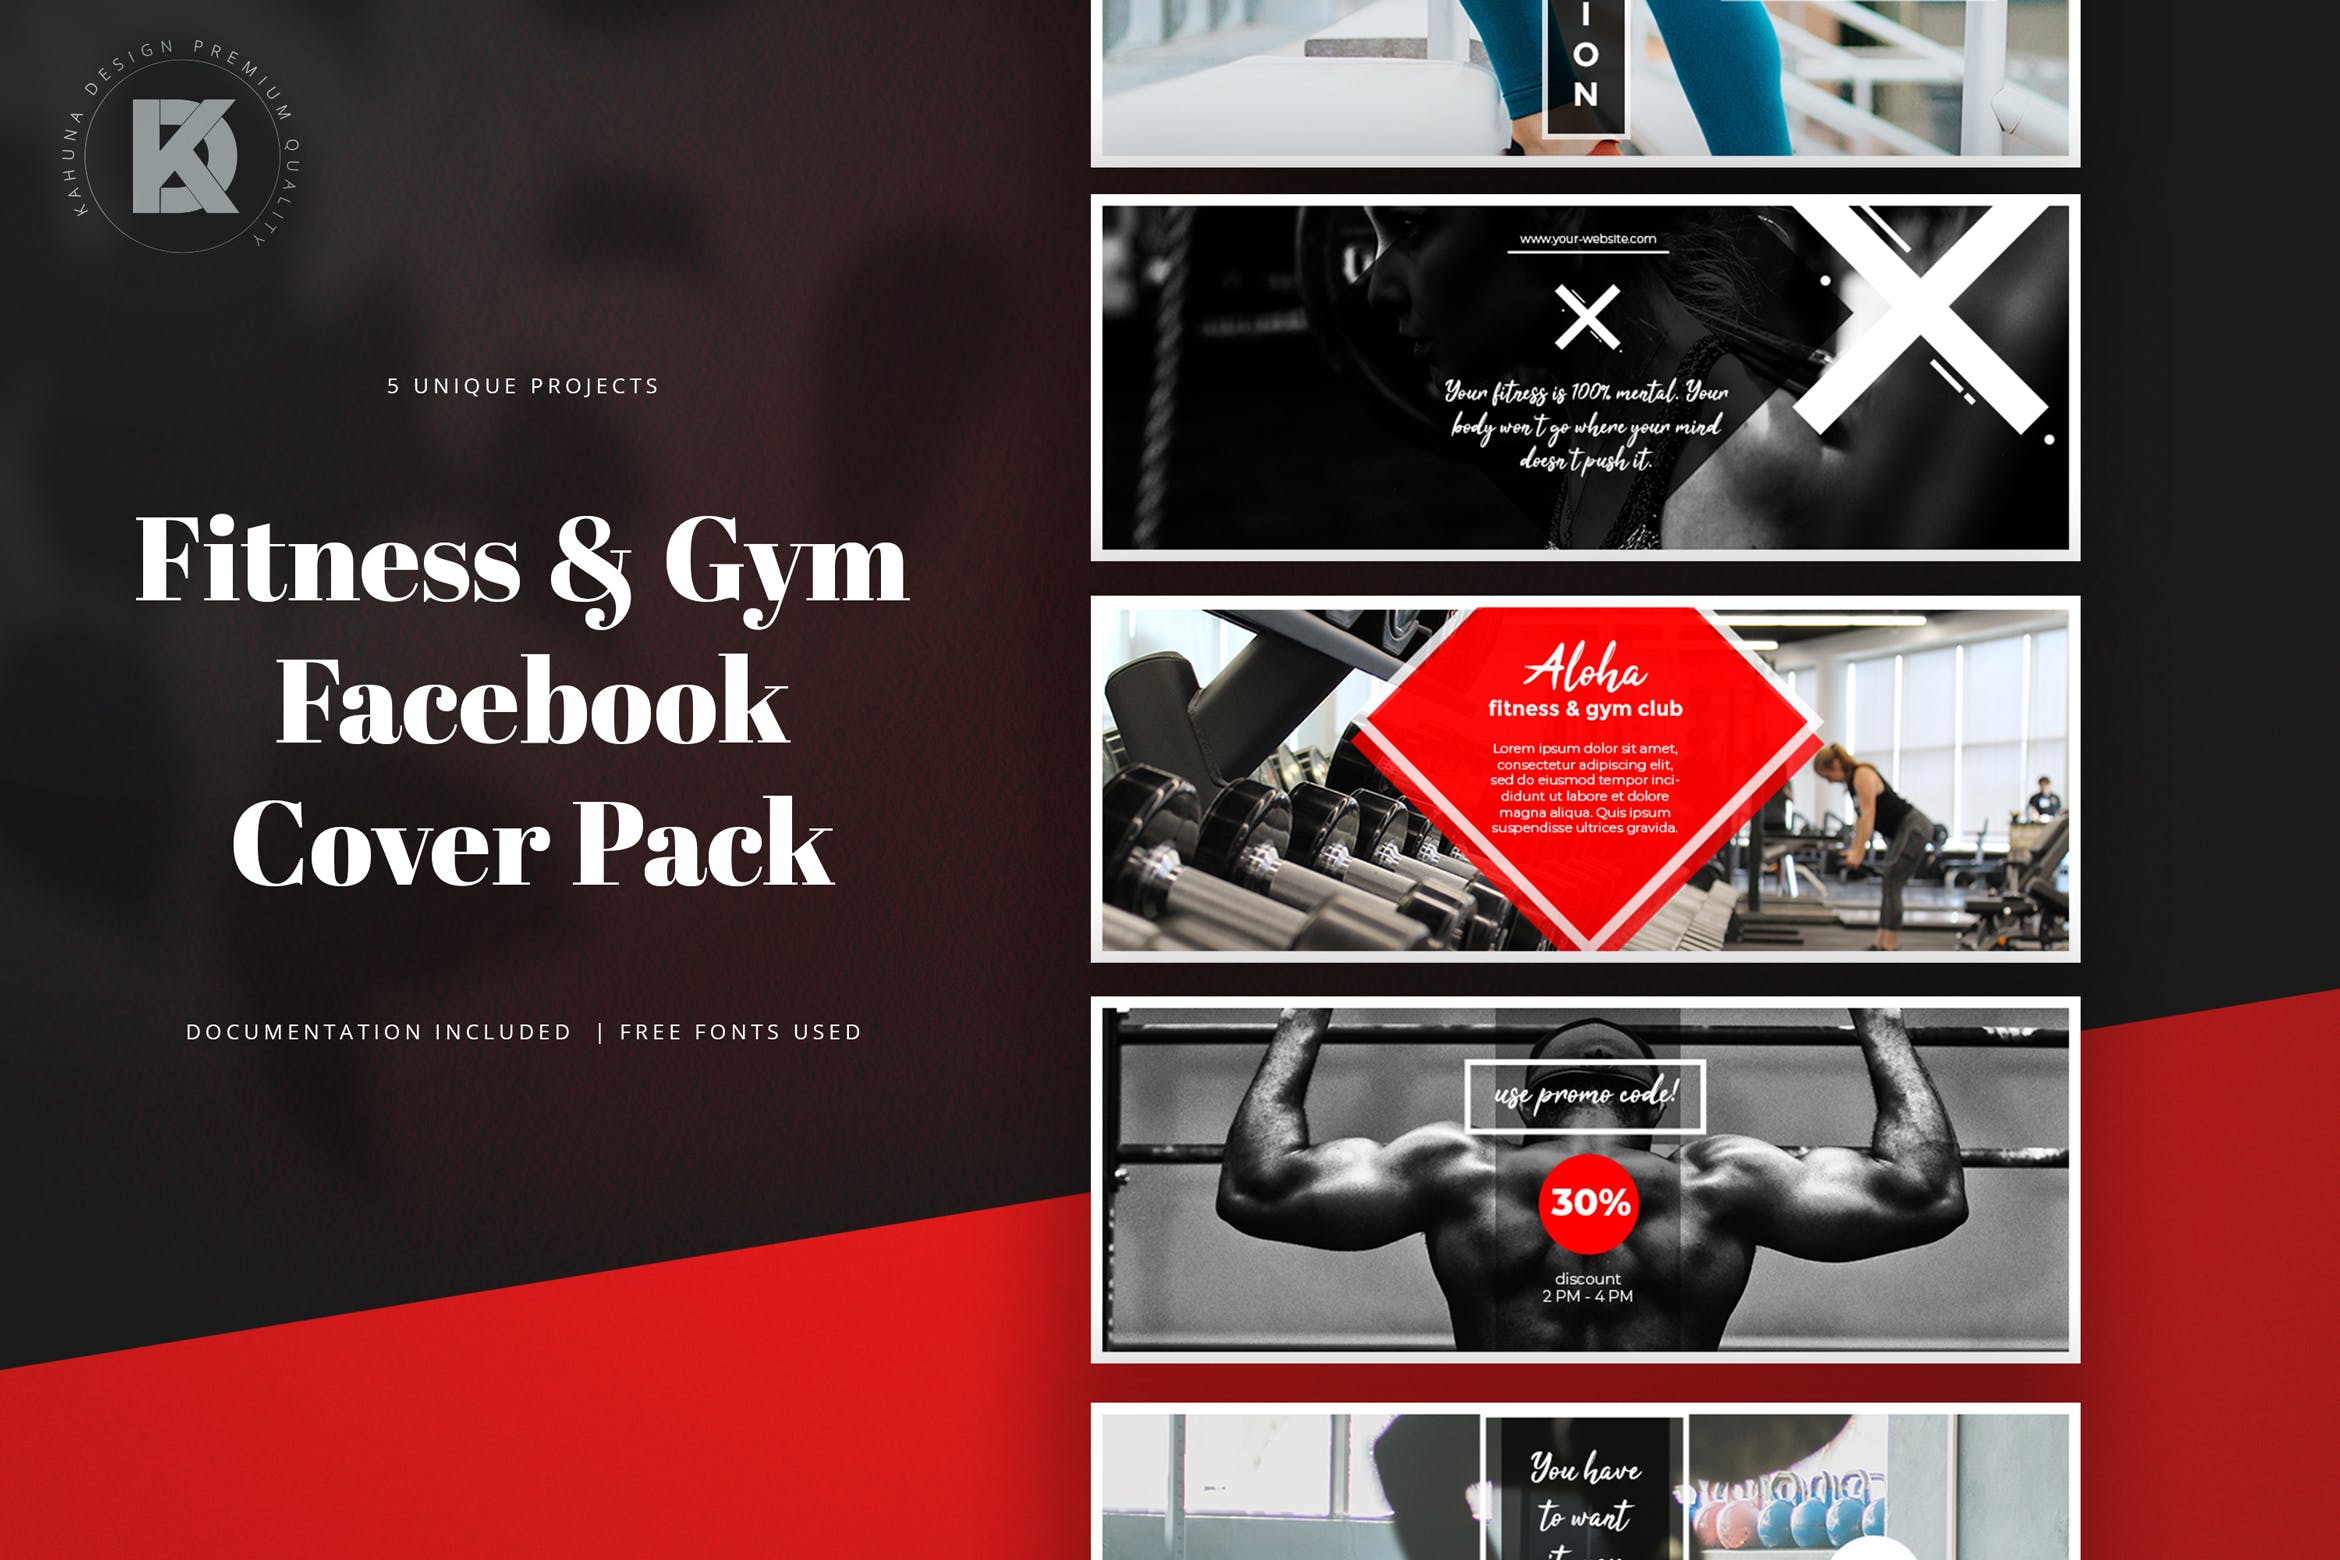 健身运动品牌Facebook封面设计模板蚂蚁素材精选 Fitness & Gym Facebook Cover Pack插图